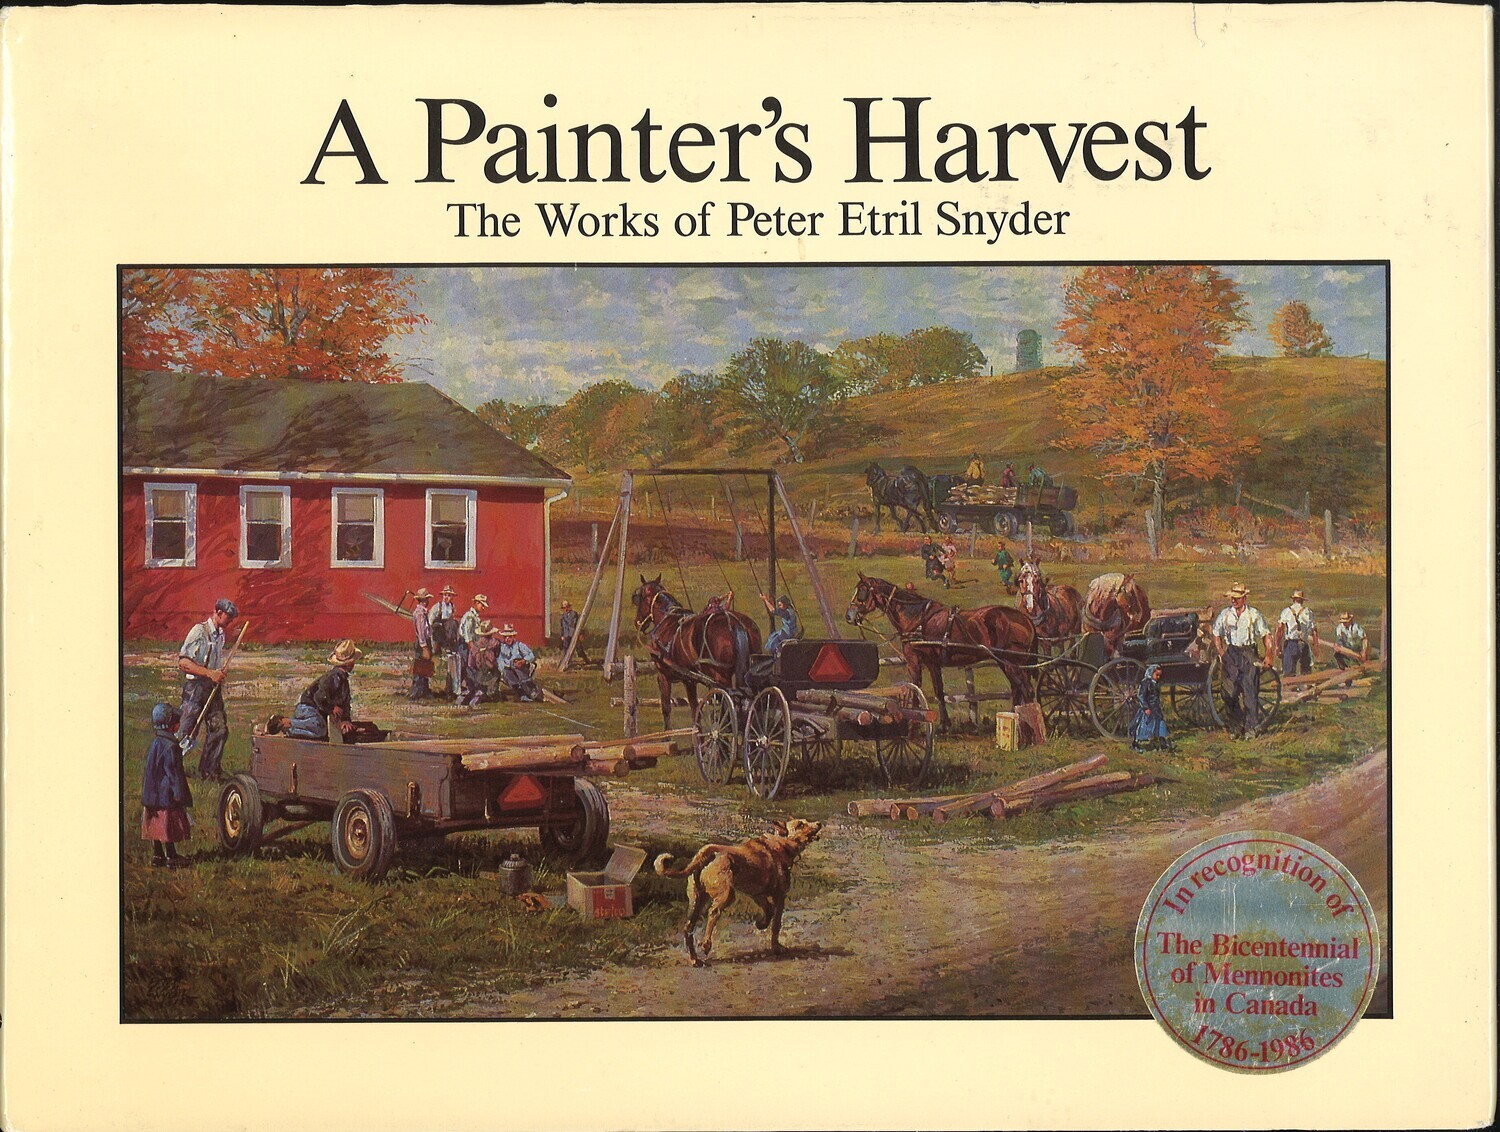 A Painter's Harvest